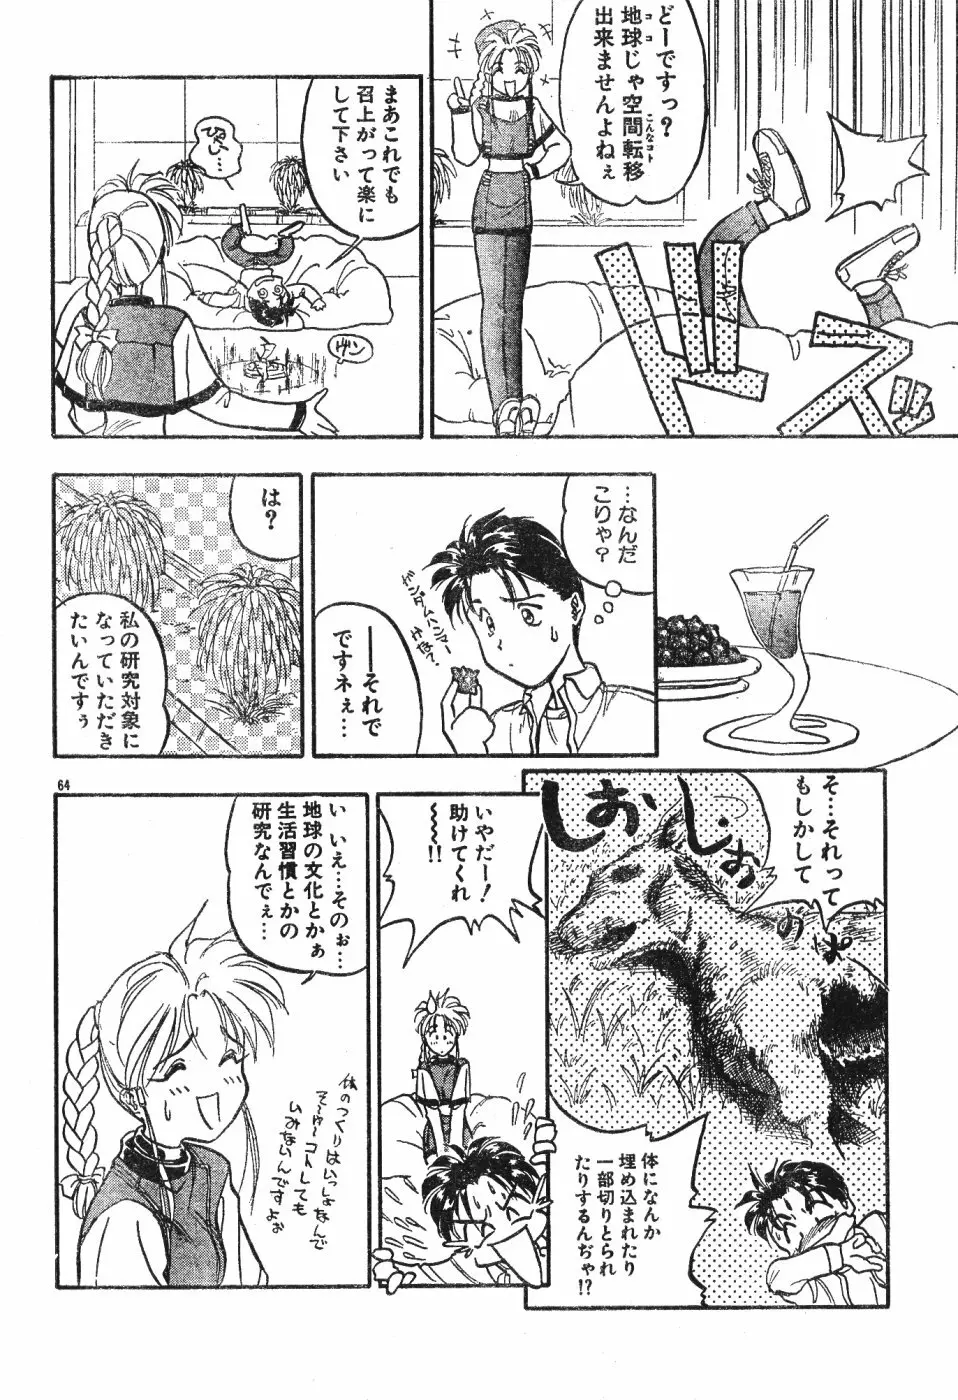 Men’s Dolphin Vol 12 2000-08-01 64ページ